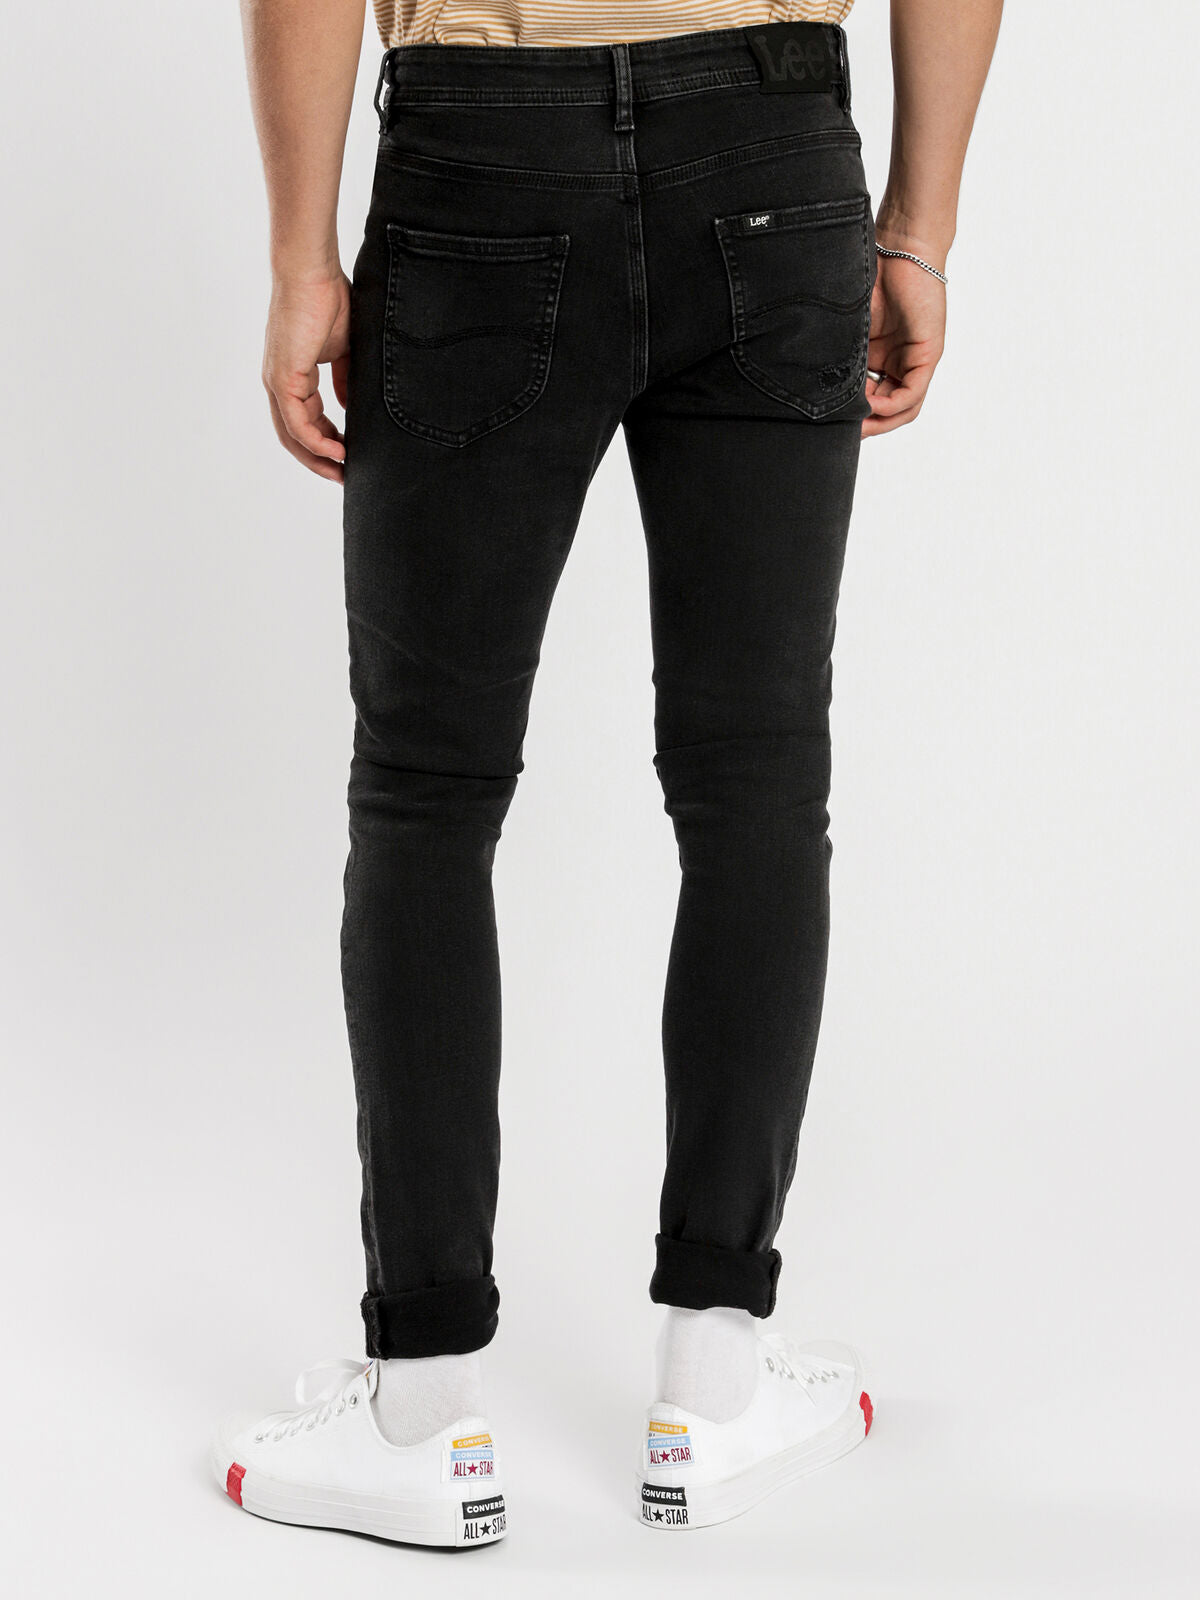 Z One Skinny Jeans in 6 Month Black Denim